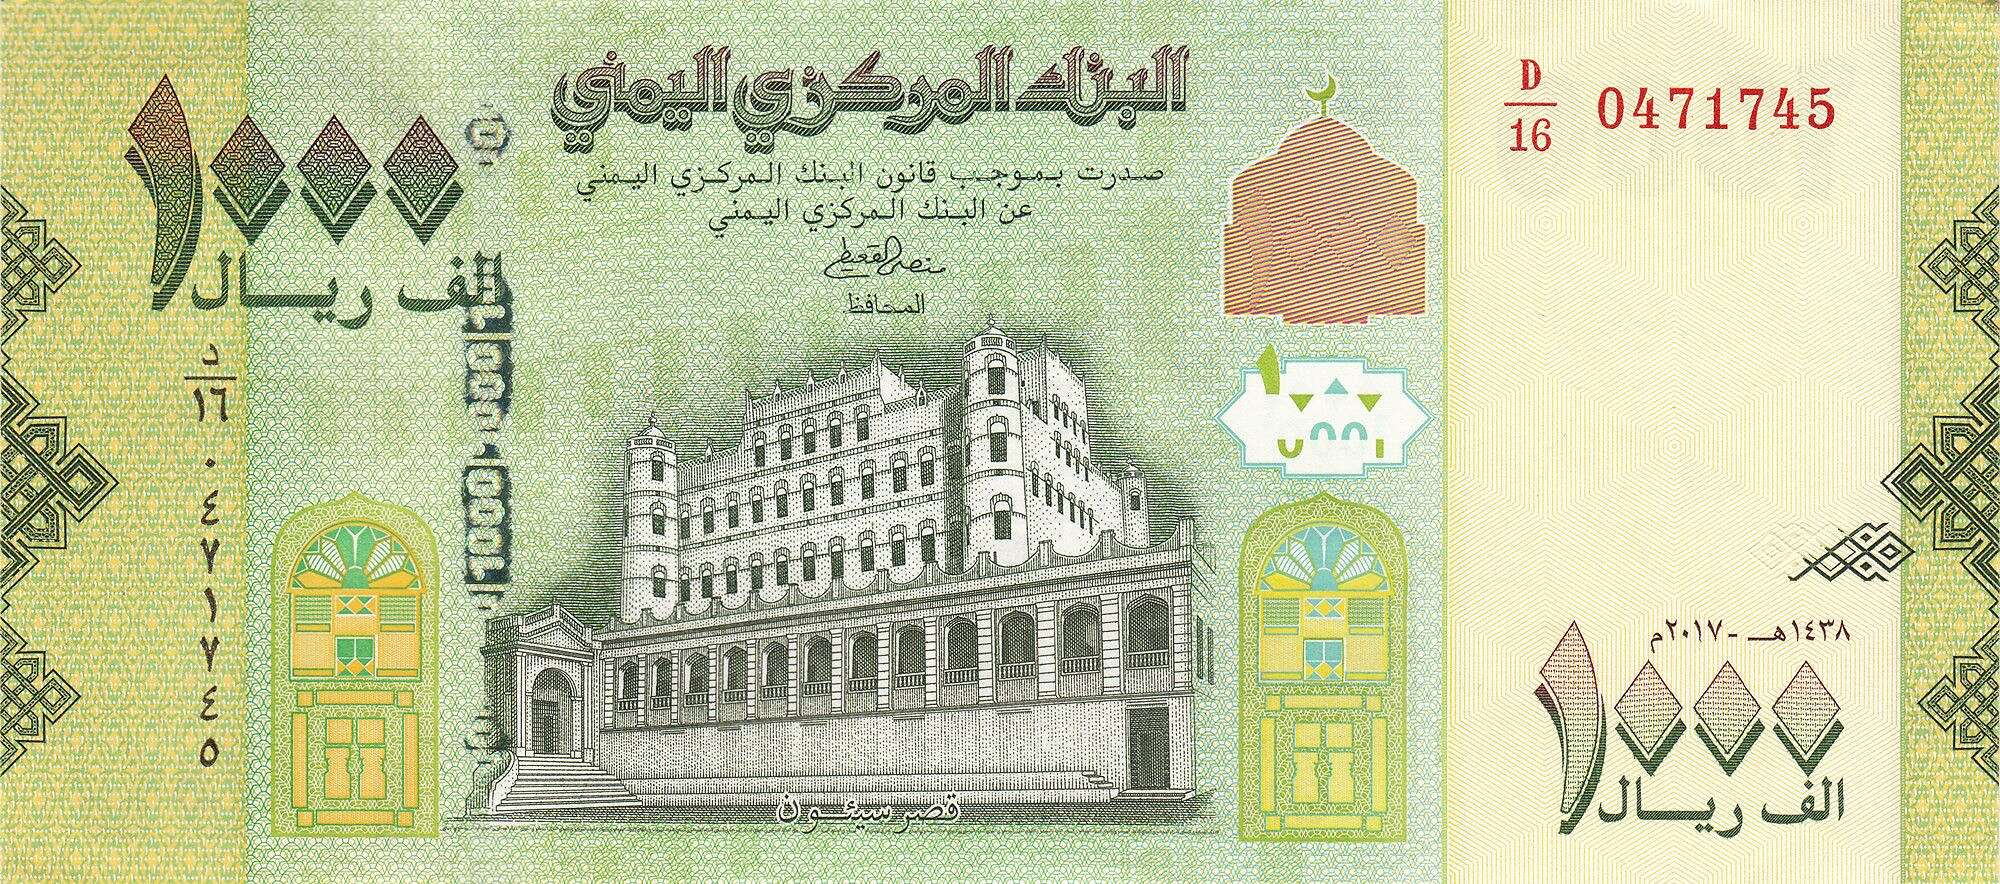 الريال اليمني يتراجع أمام العملات الأجنبية في افتتاح تعاملات الأسبوع.. آخر تحديث